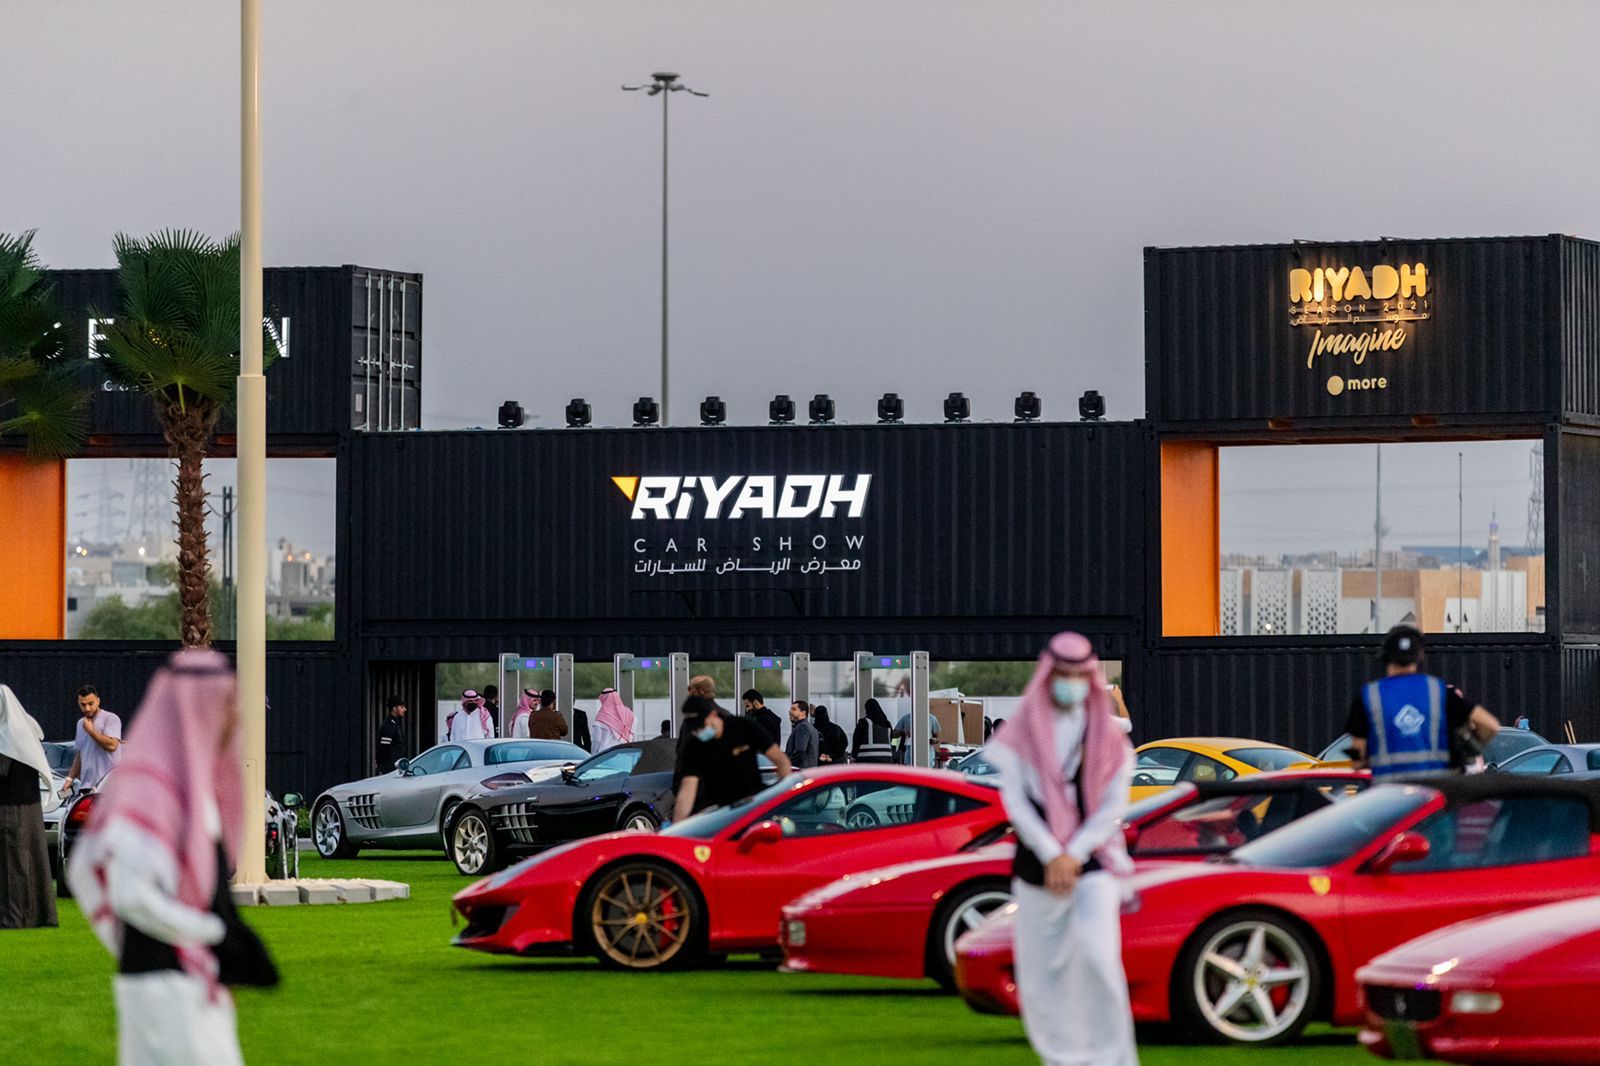 معرض الرياض للسيارات يبهر زواره بالتنوع بين الكلاسيكية والحديثة